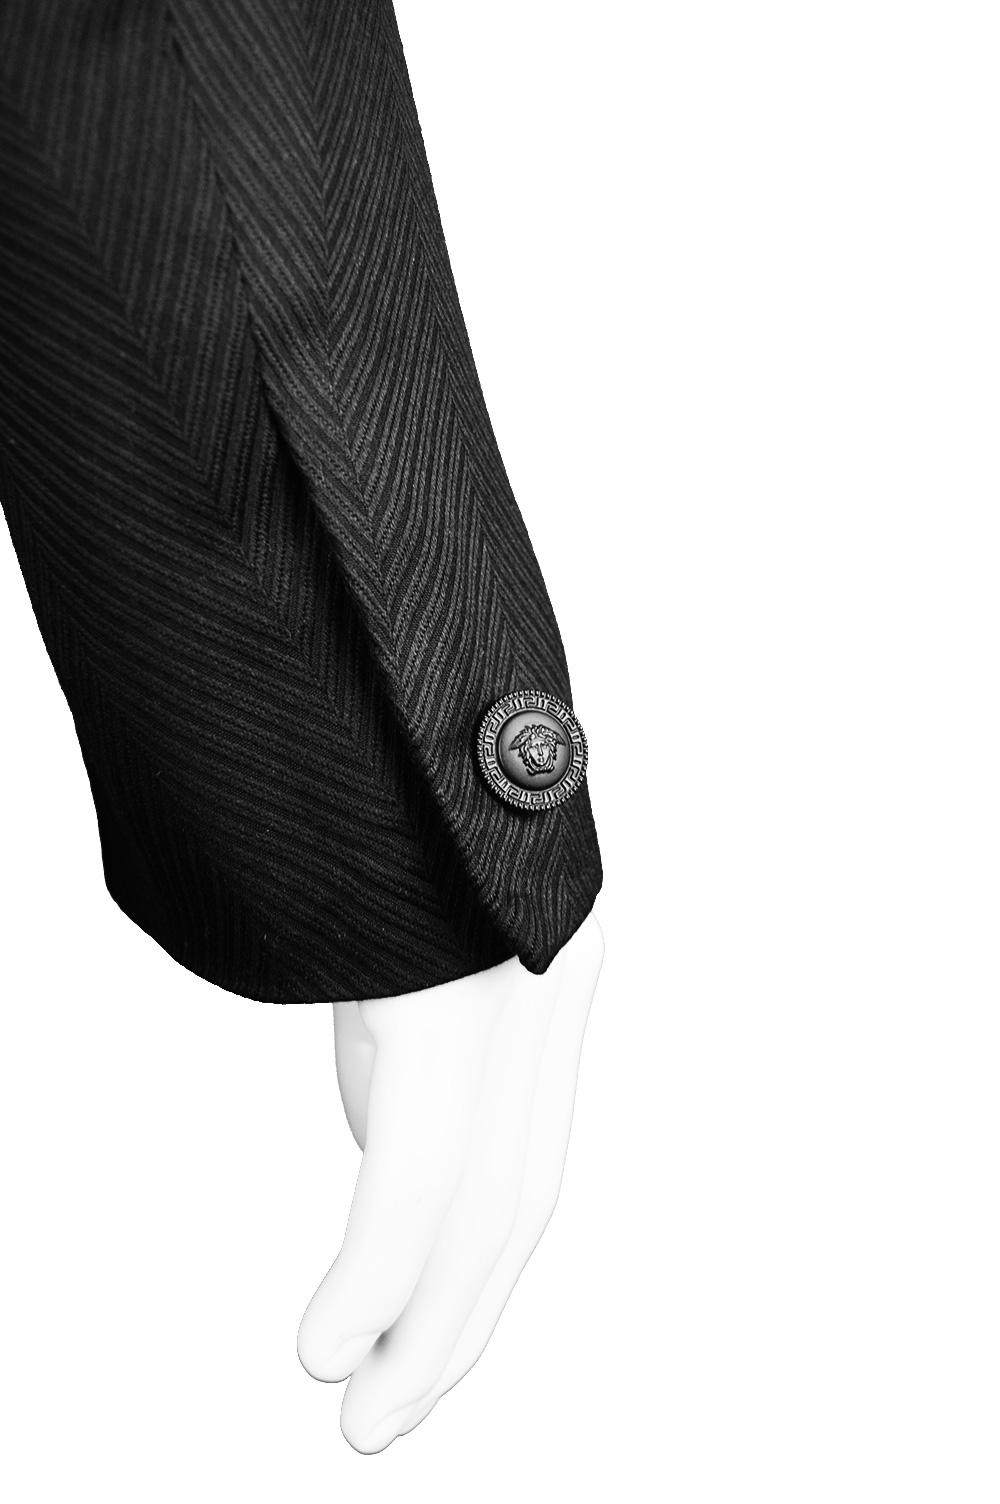 Gianni Versace Men's Black 100% Silk Jacquard 2 Piece Vintage Suit, 1990s For Sale 4